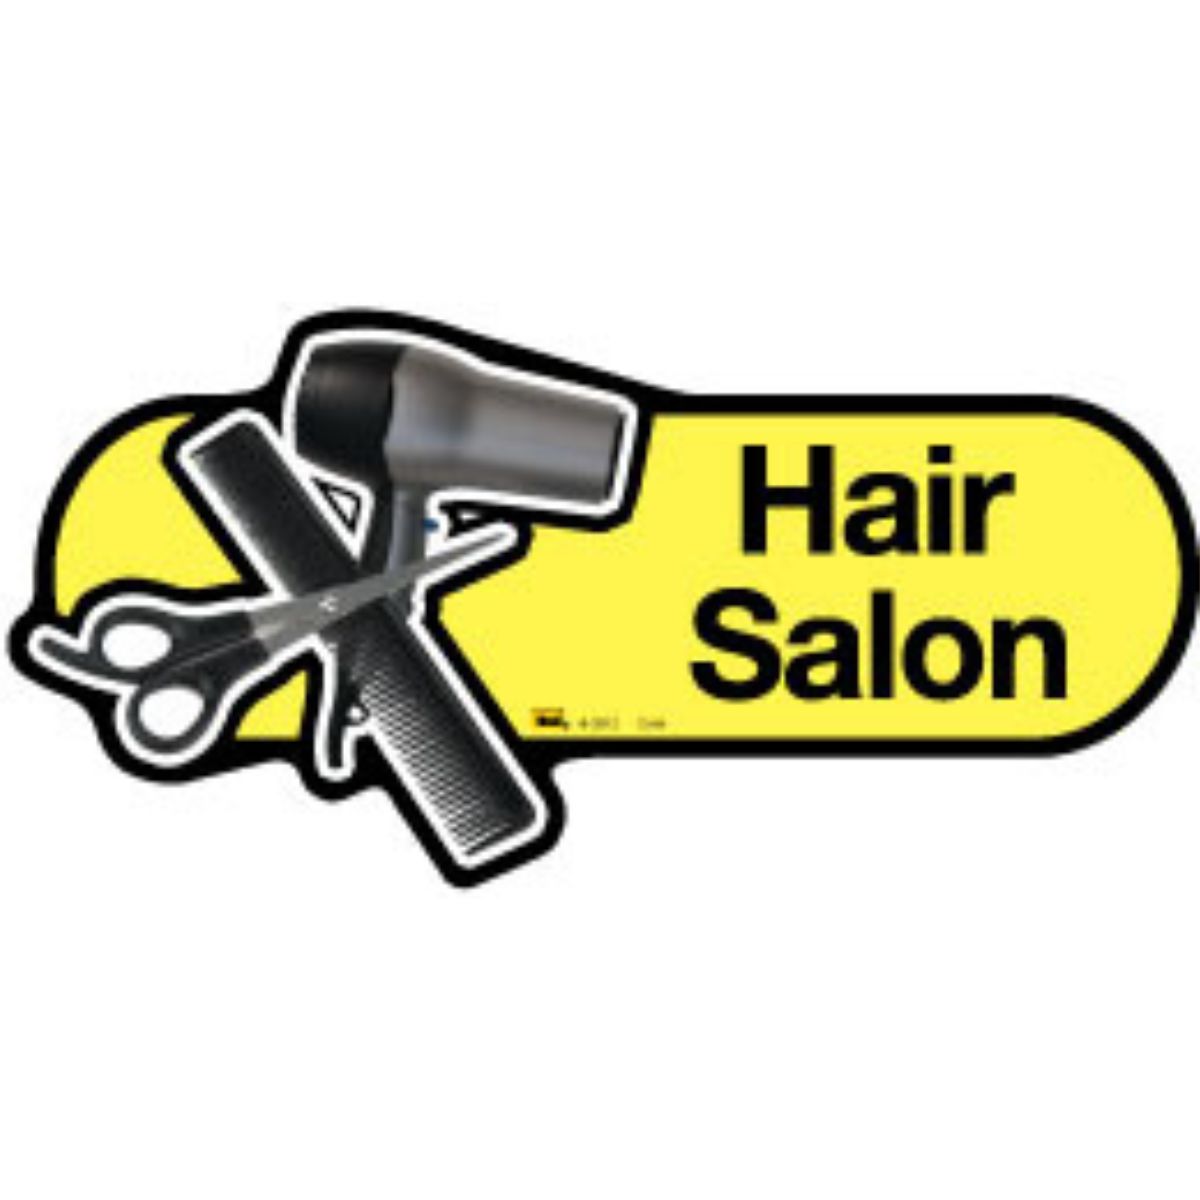 Hair Salon Sign, 30cm